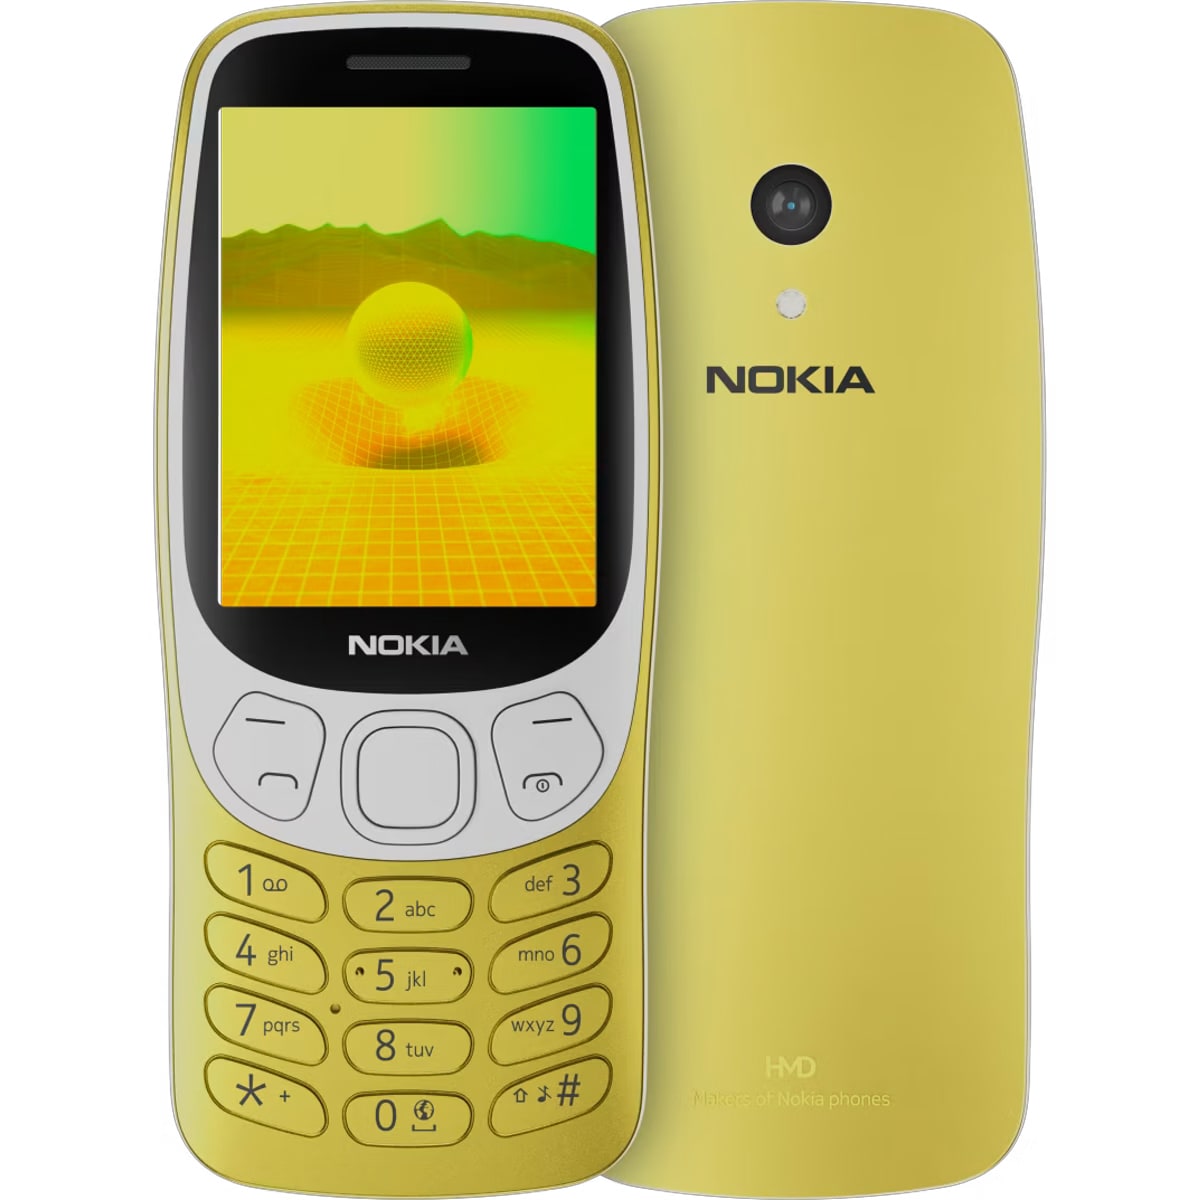 È diventata ufficiale la nuova versione del telefono Nokia 3210, al prezzo di 80 euro